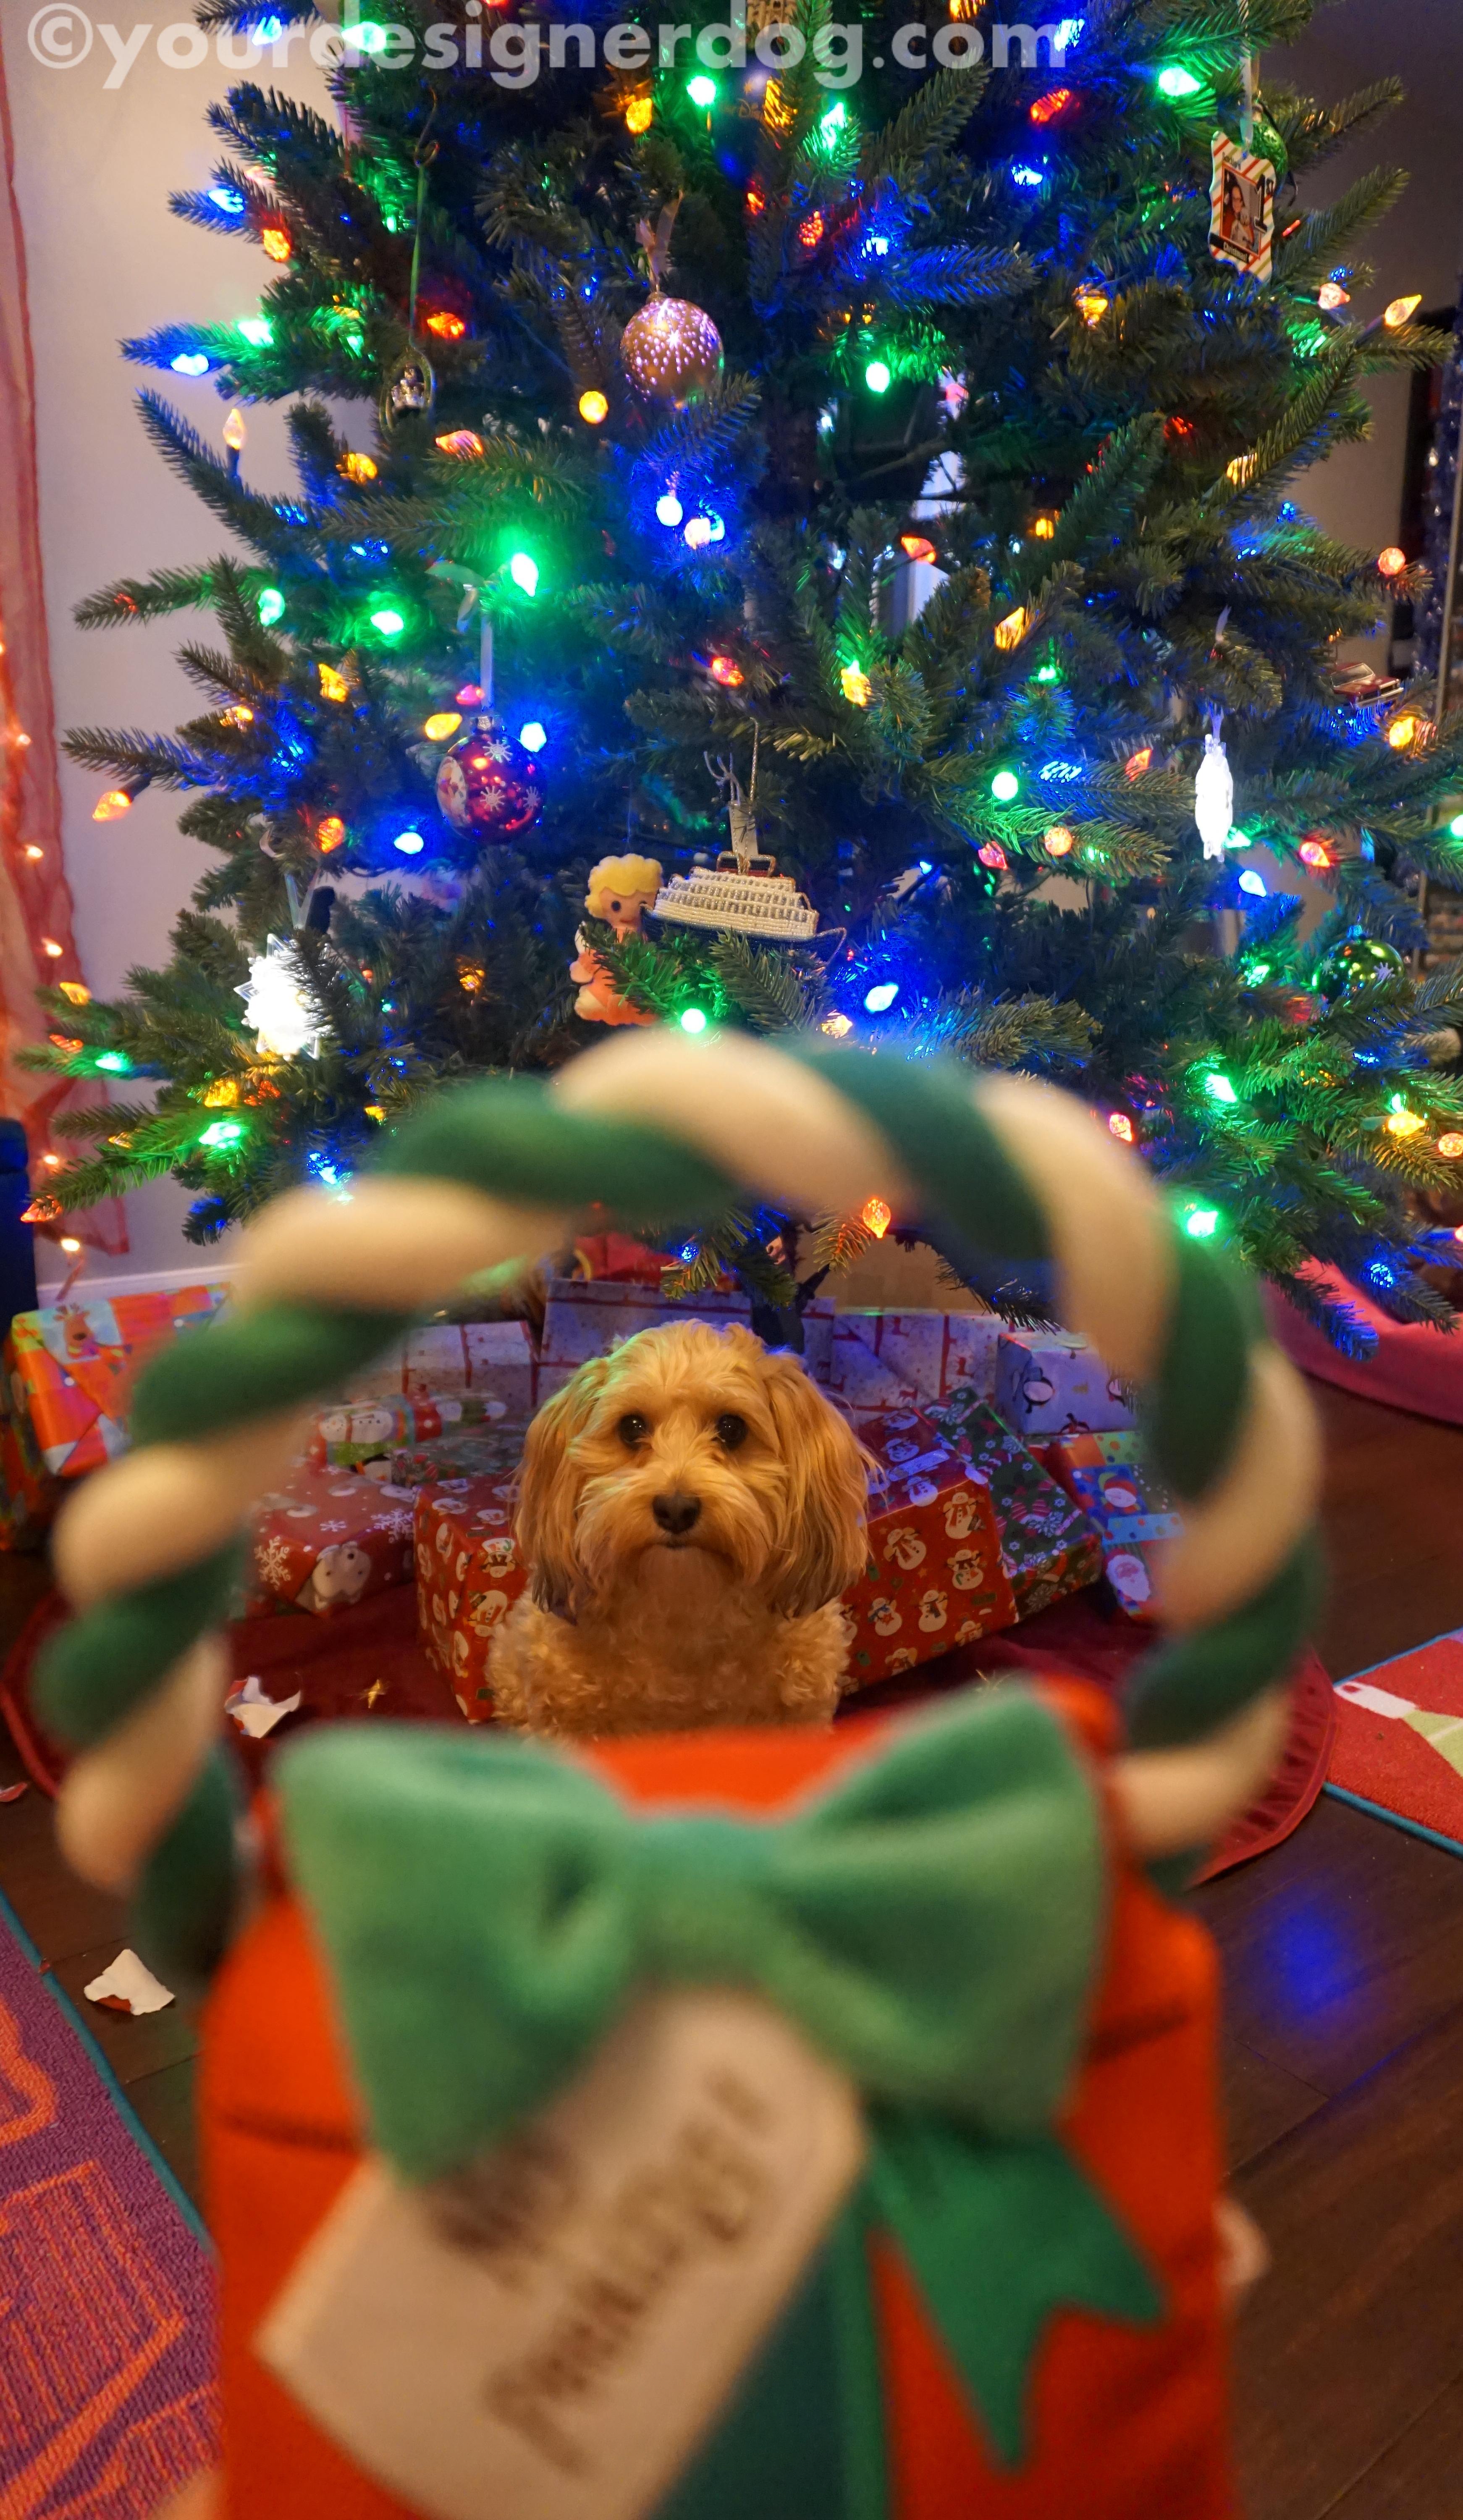 dogs, designer dogs, yorkipoo, yorkie poo, christmas, present, christmas tree